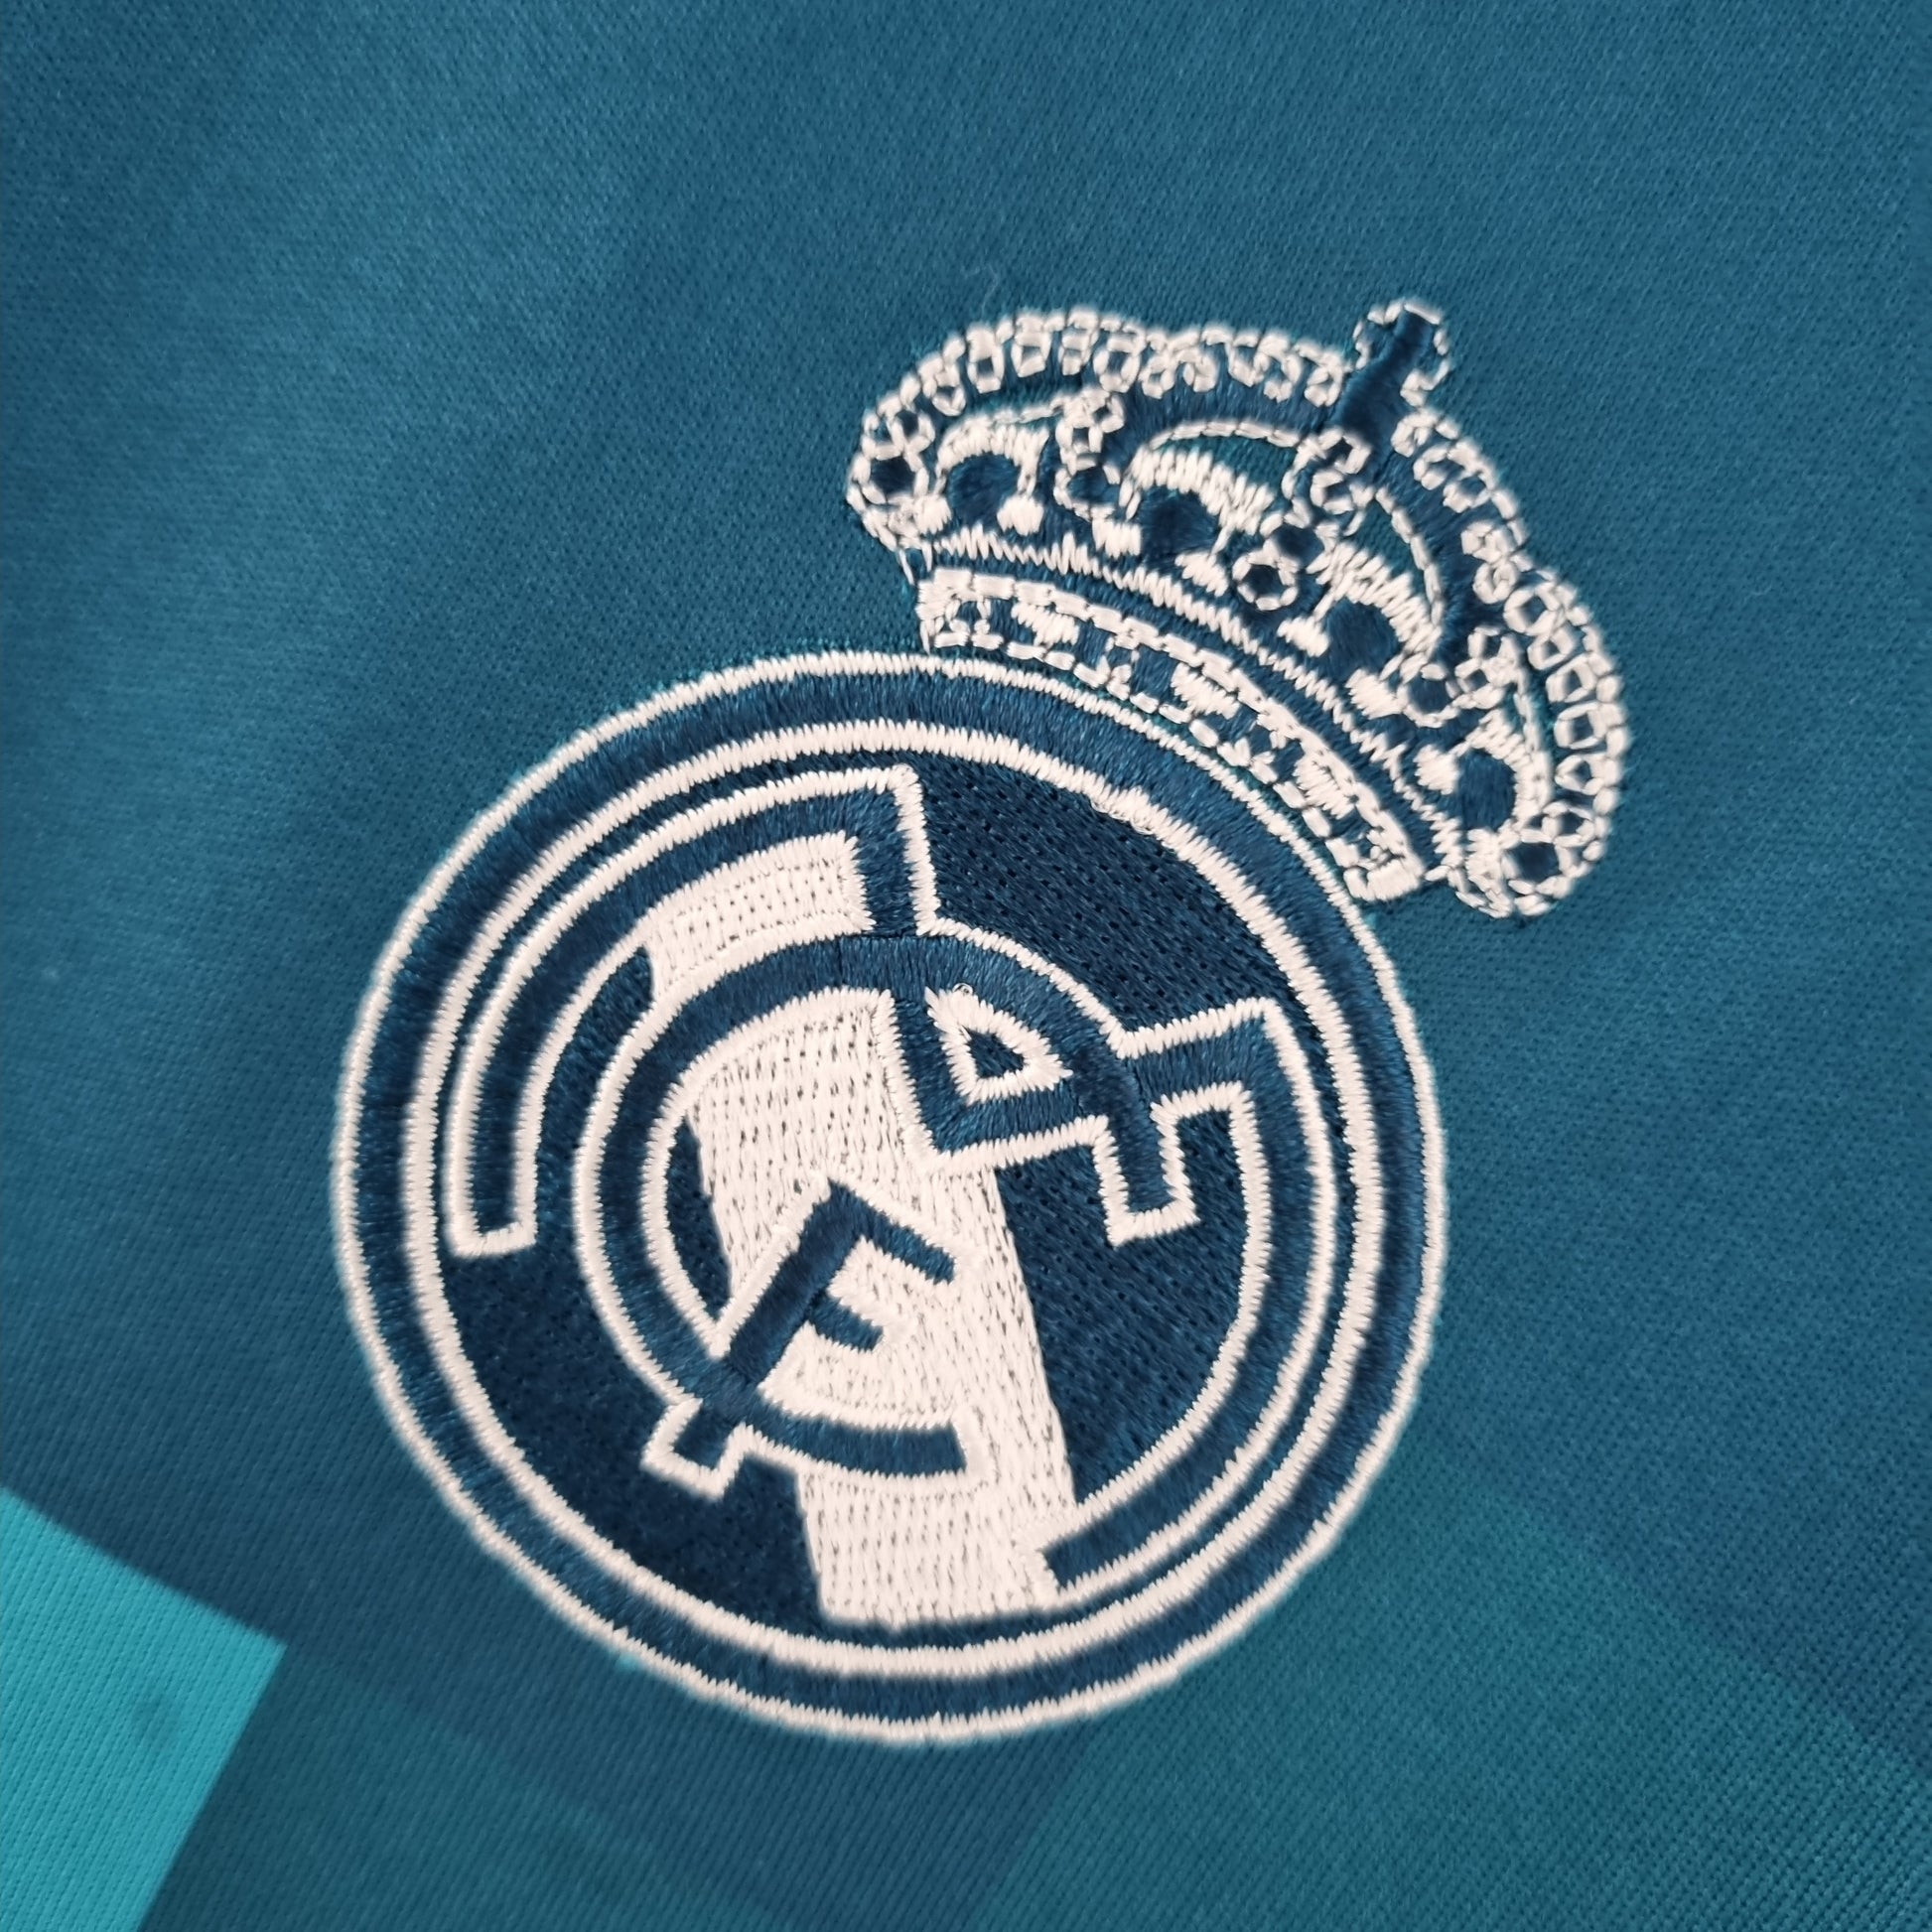 Camiseta Real Madrid 2017/18 third away